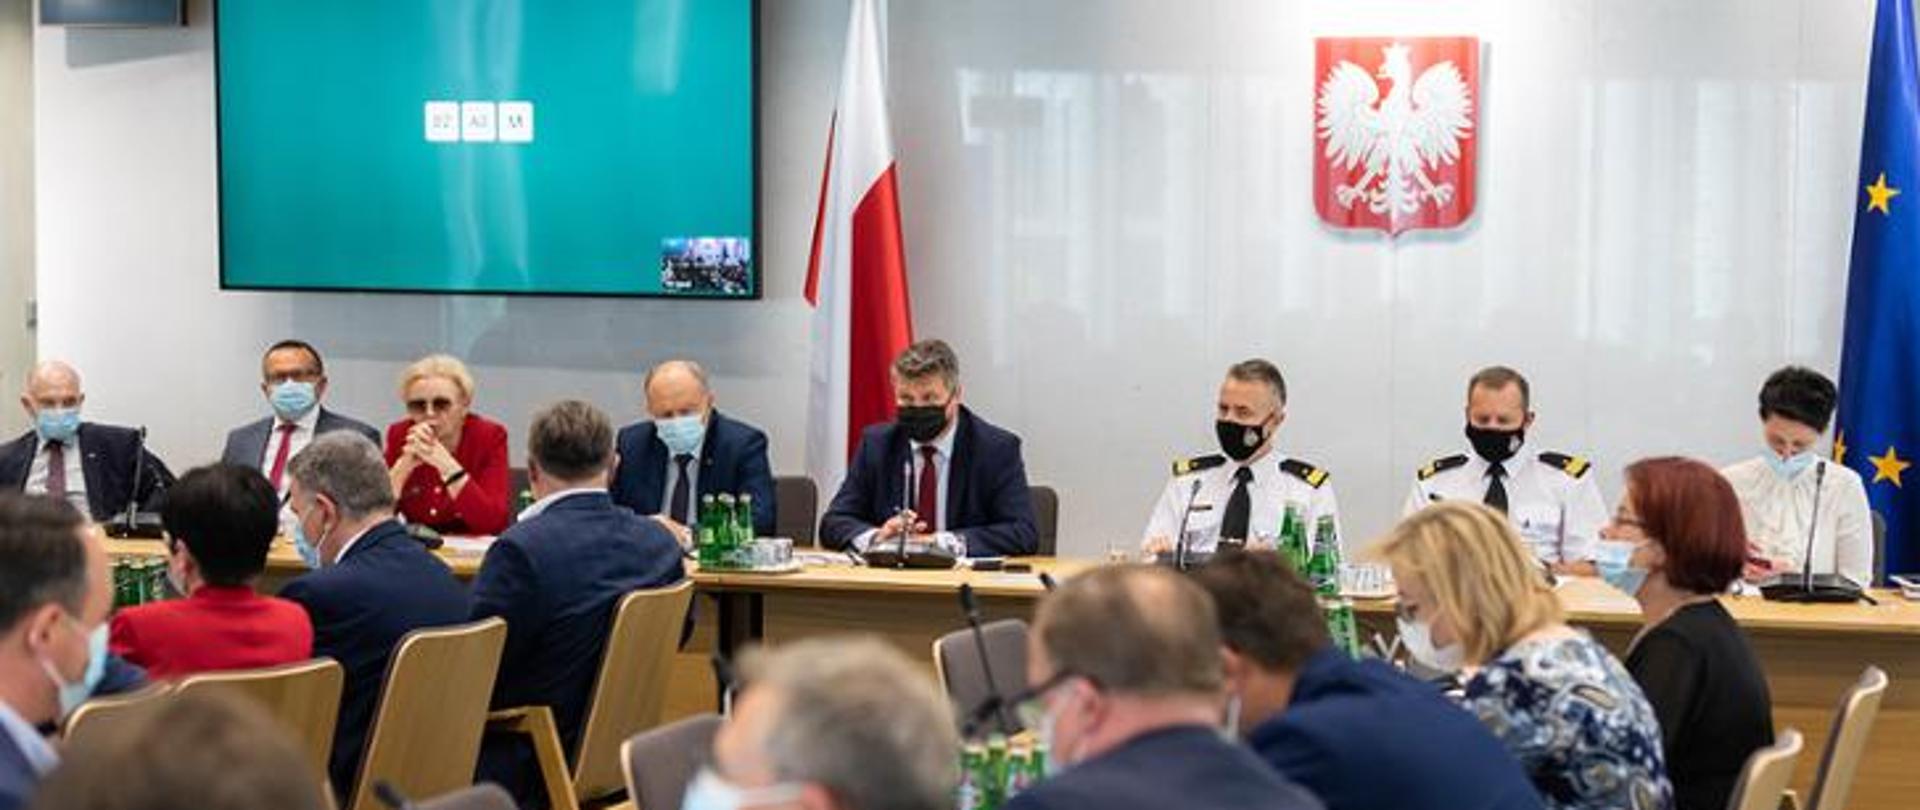 Na zdjęciu przy stołach siedzą uczestnicy posiedzenia tj. członkowie parlamentarnego zespołu strażaków oraz wiceminister SWiA, komendant główny PSP wraz z zastępcą, na ścianie na wprost wisi godło Polski, po lewej stronie ekran z niebieskim tłem